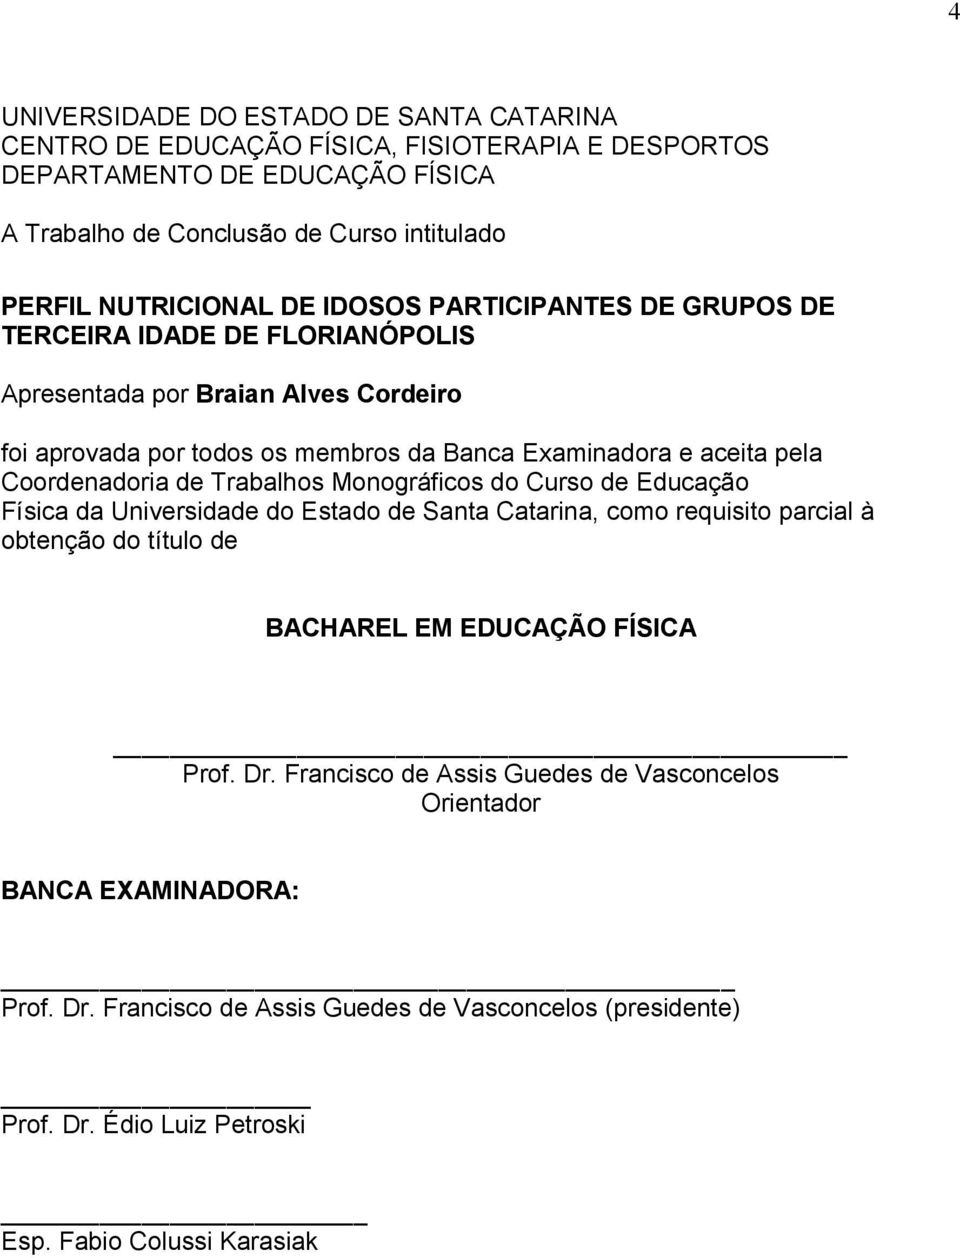 Coordenadoria de Trabalhos Monográficos do Curso de Educação Física da Universidade do Estado de Santa Catarina, como requisito parcial à obtenção do título de BACHAREL EM EDUCAÇÃO FÍSICA